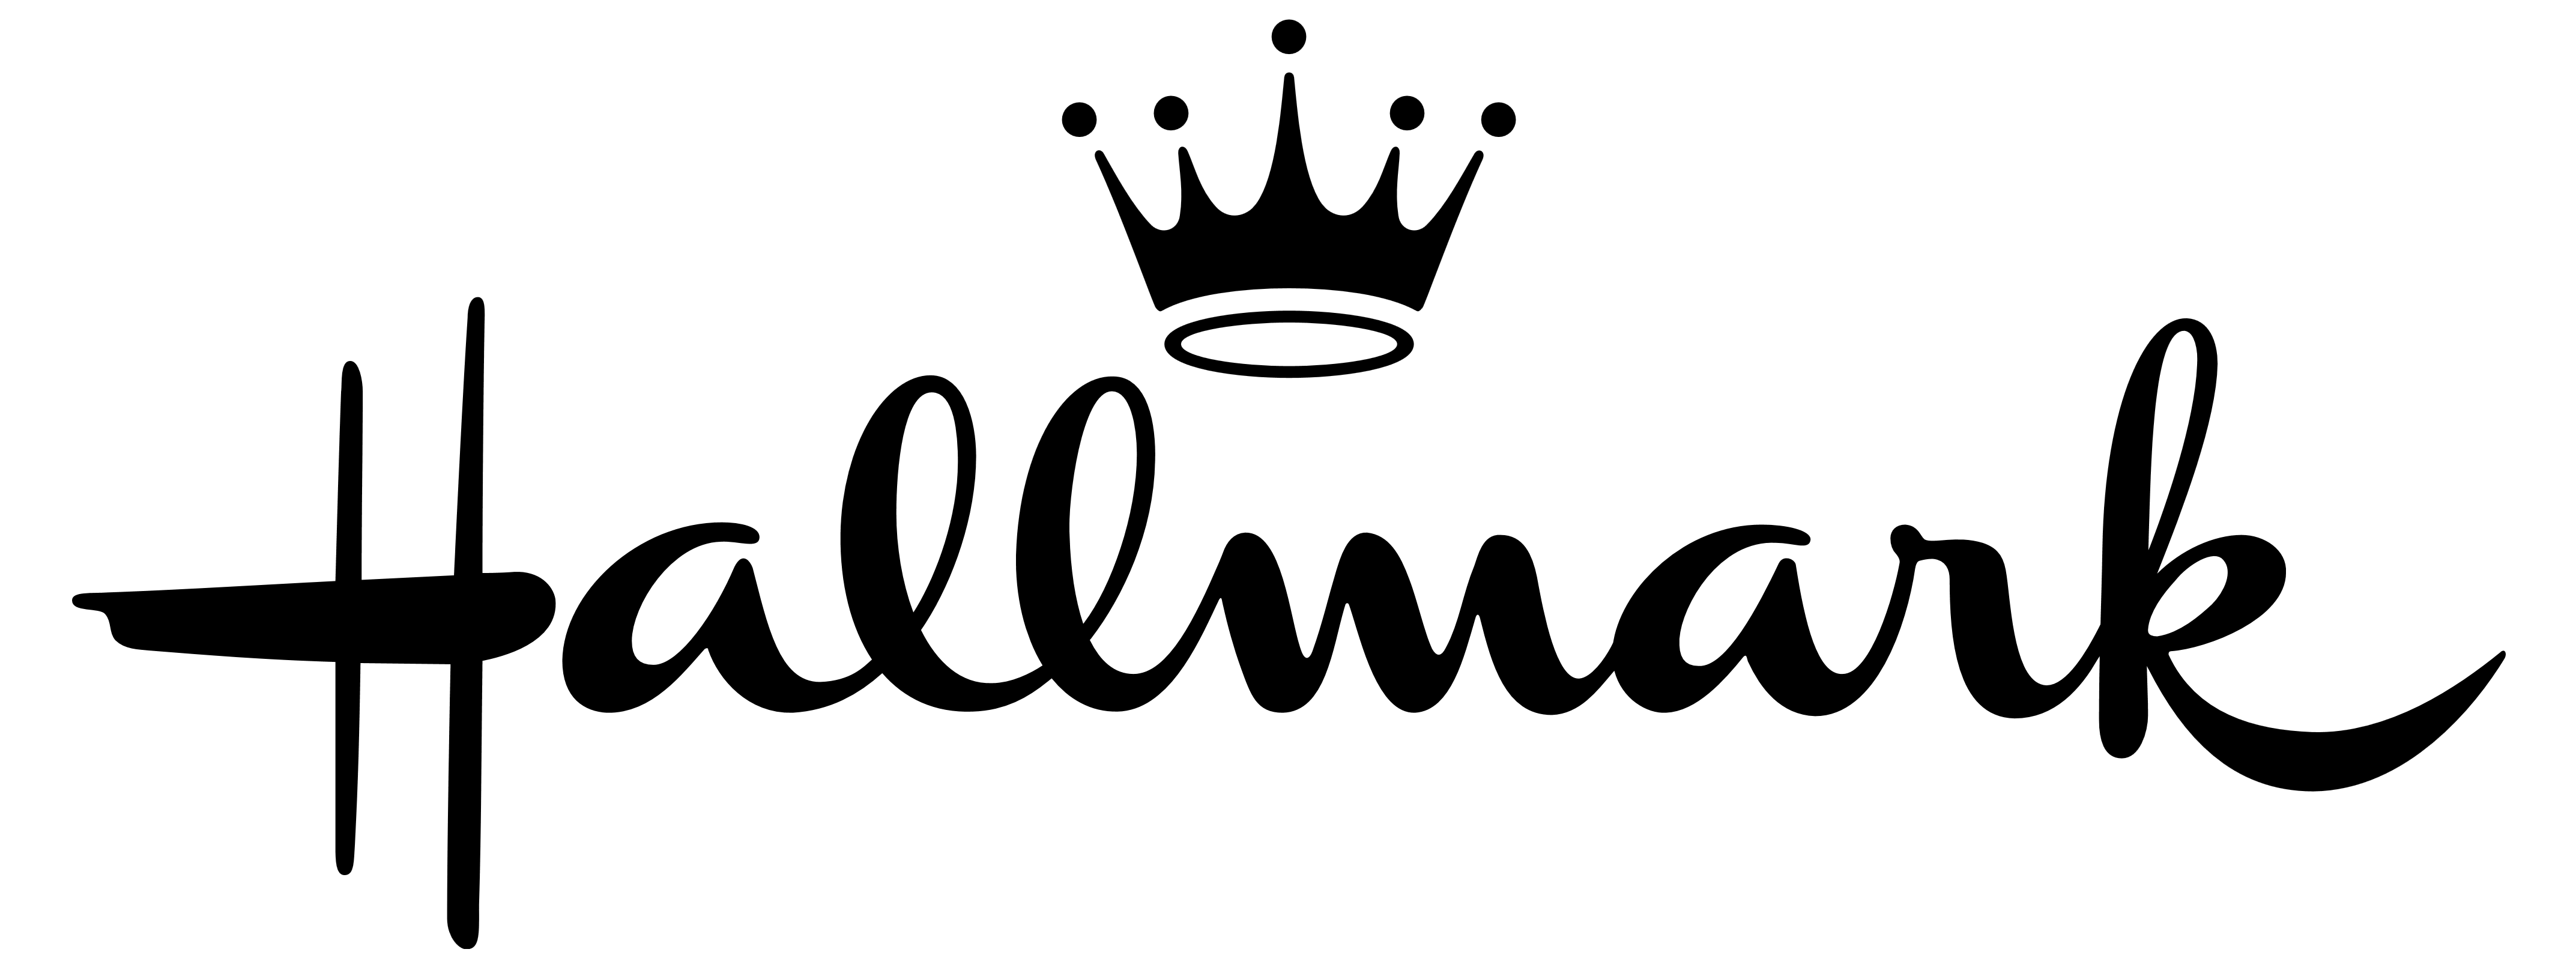 Hallmark Logo - Hallmark Channel